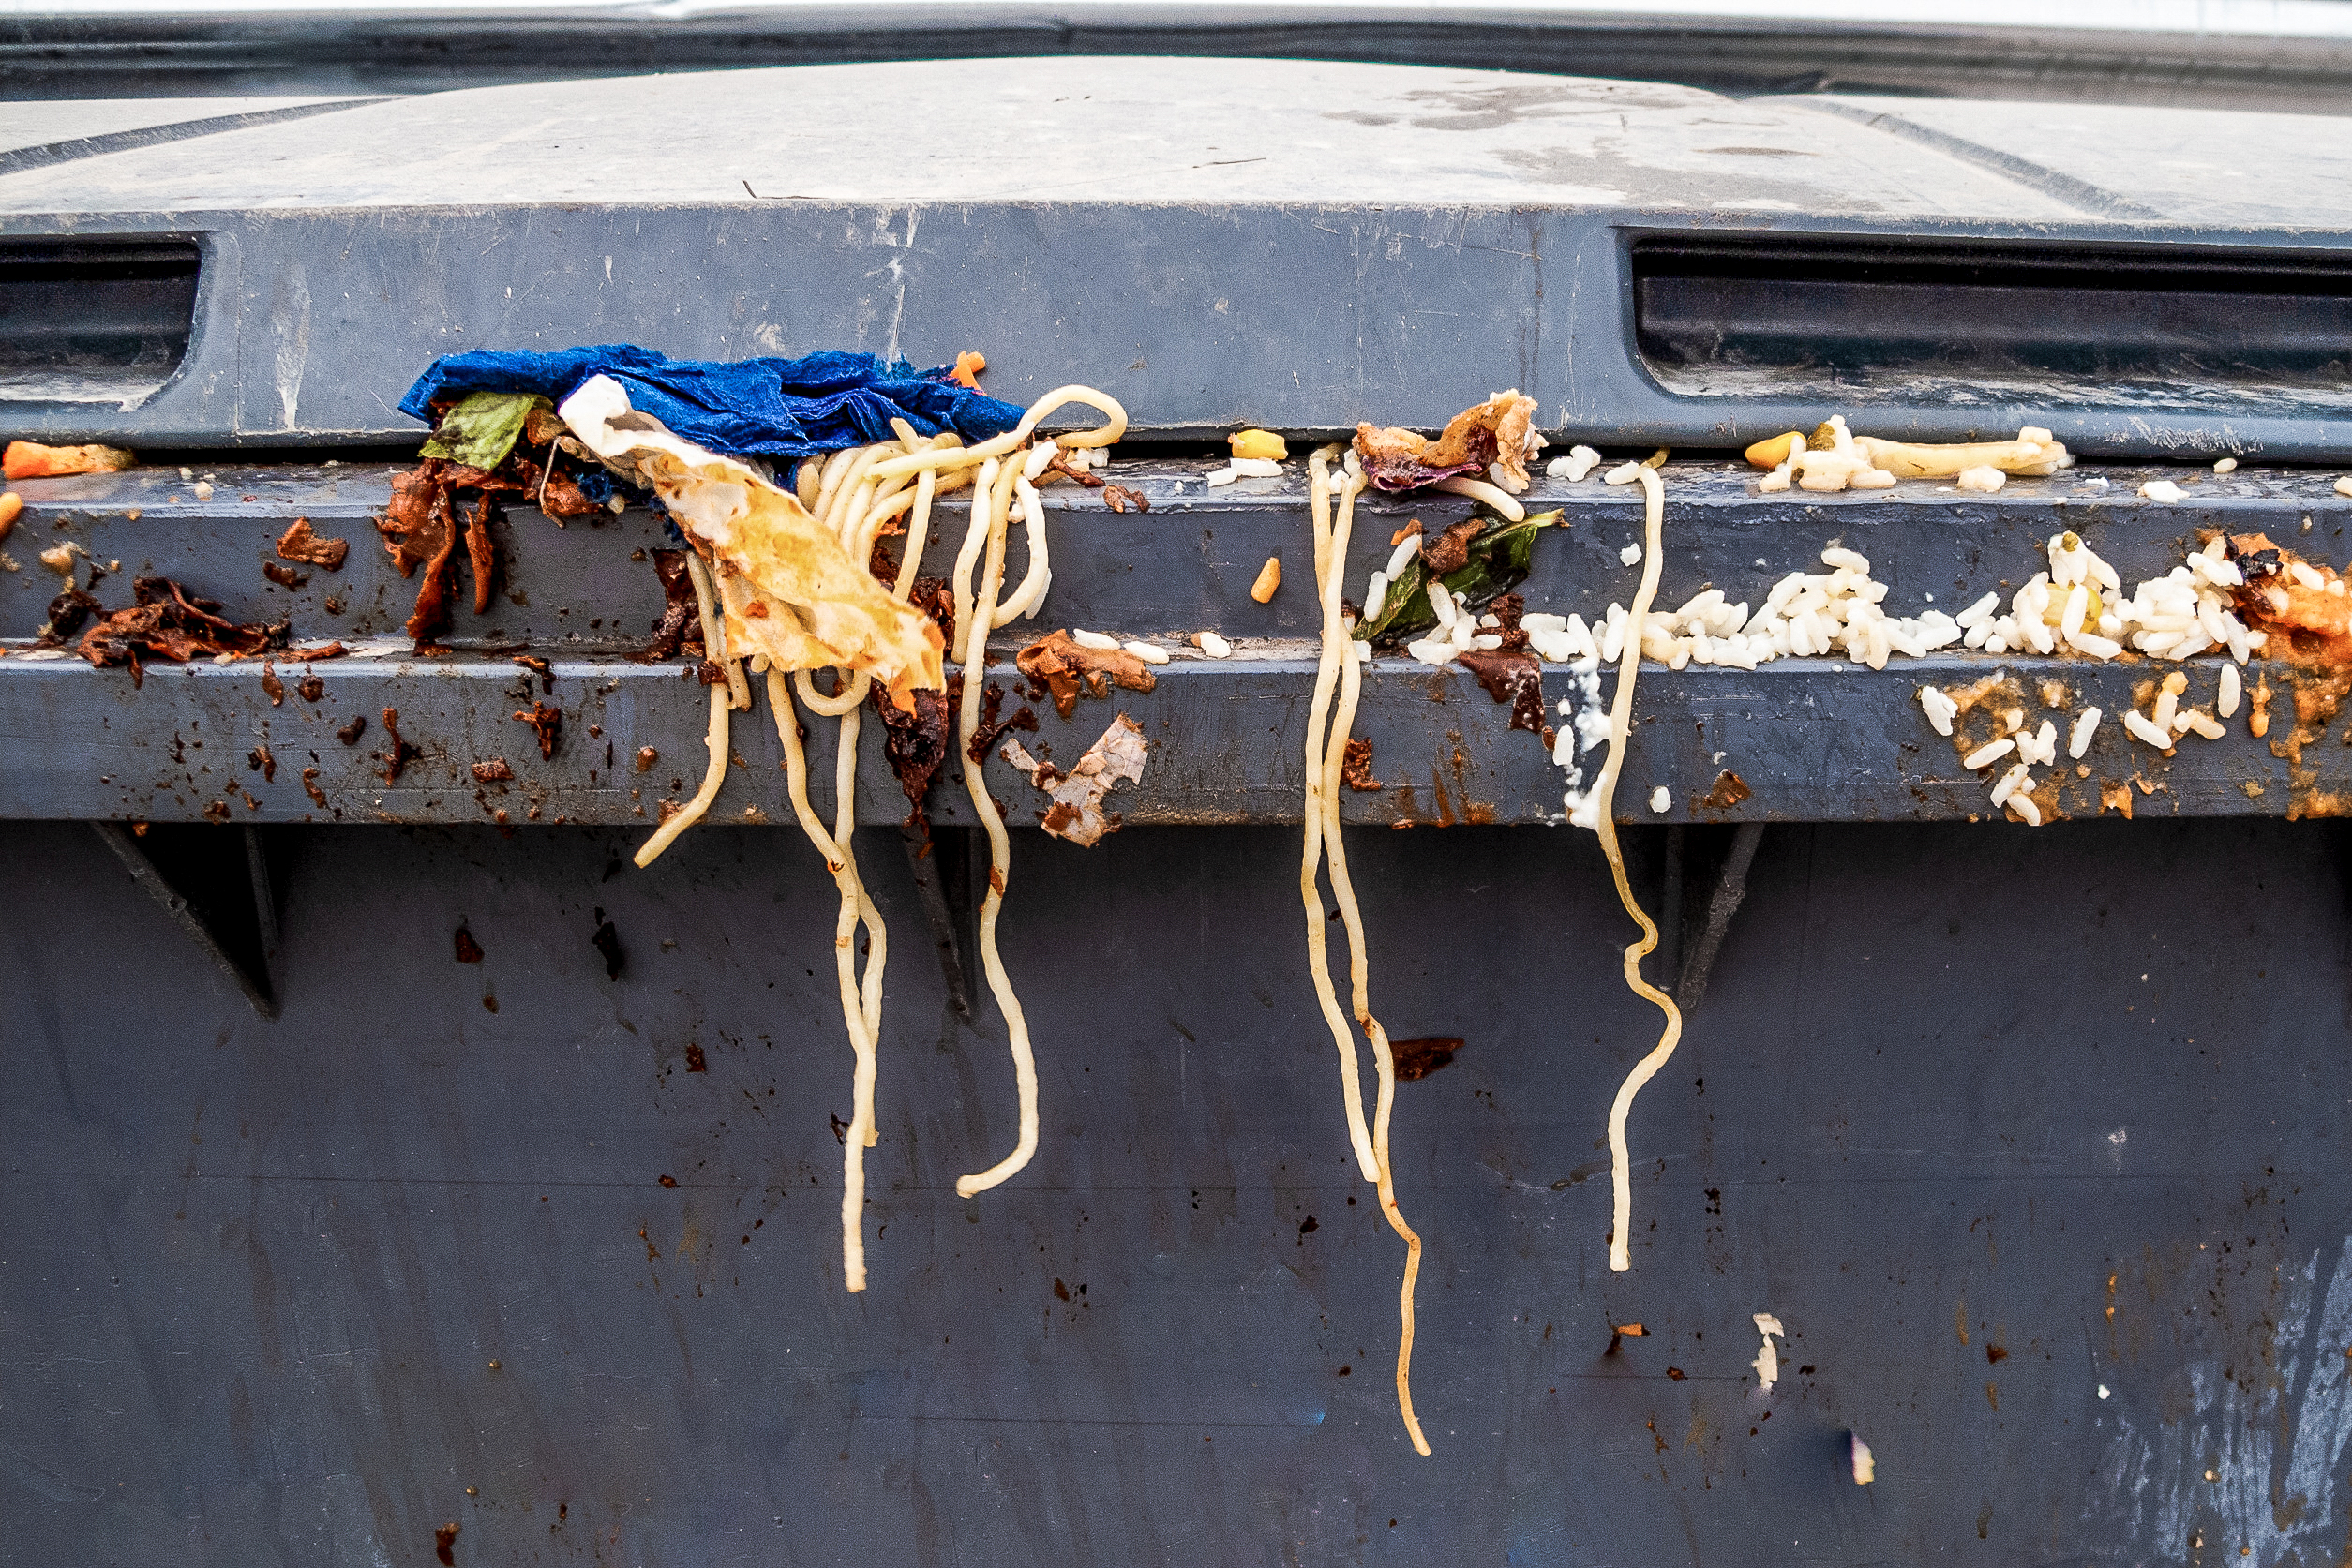 Spaghetti und andere Lebensmittelabfälle auf einem grauen Mülleimer.